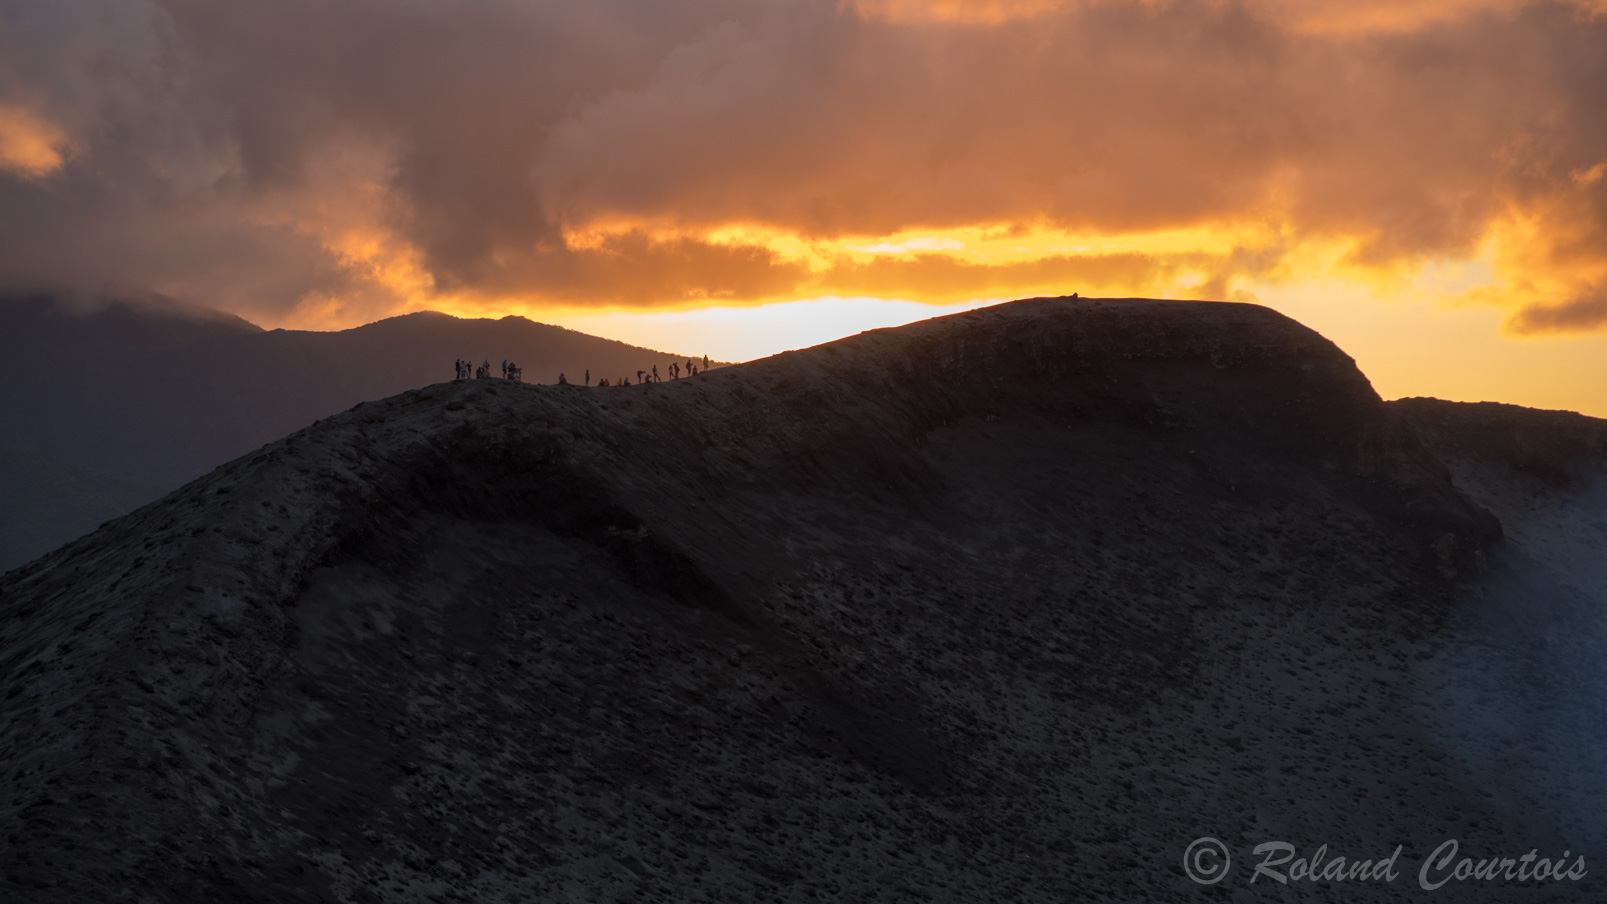 Assez facile d'accès, le sommet du volcan Yasur au coucher du soleil permet de vivre au plus près des entrailles de la terre.